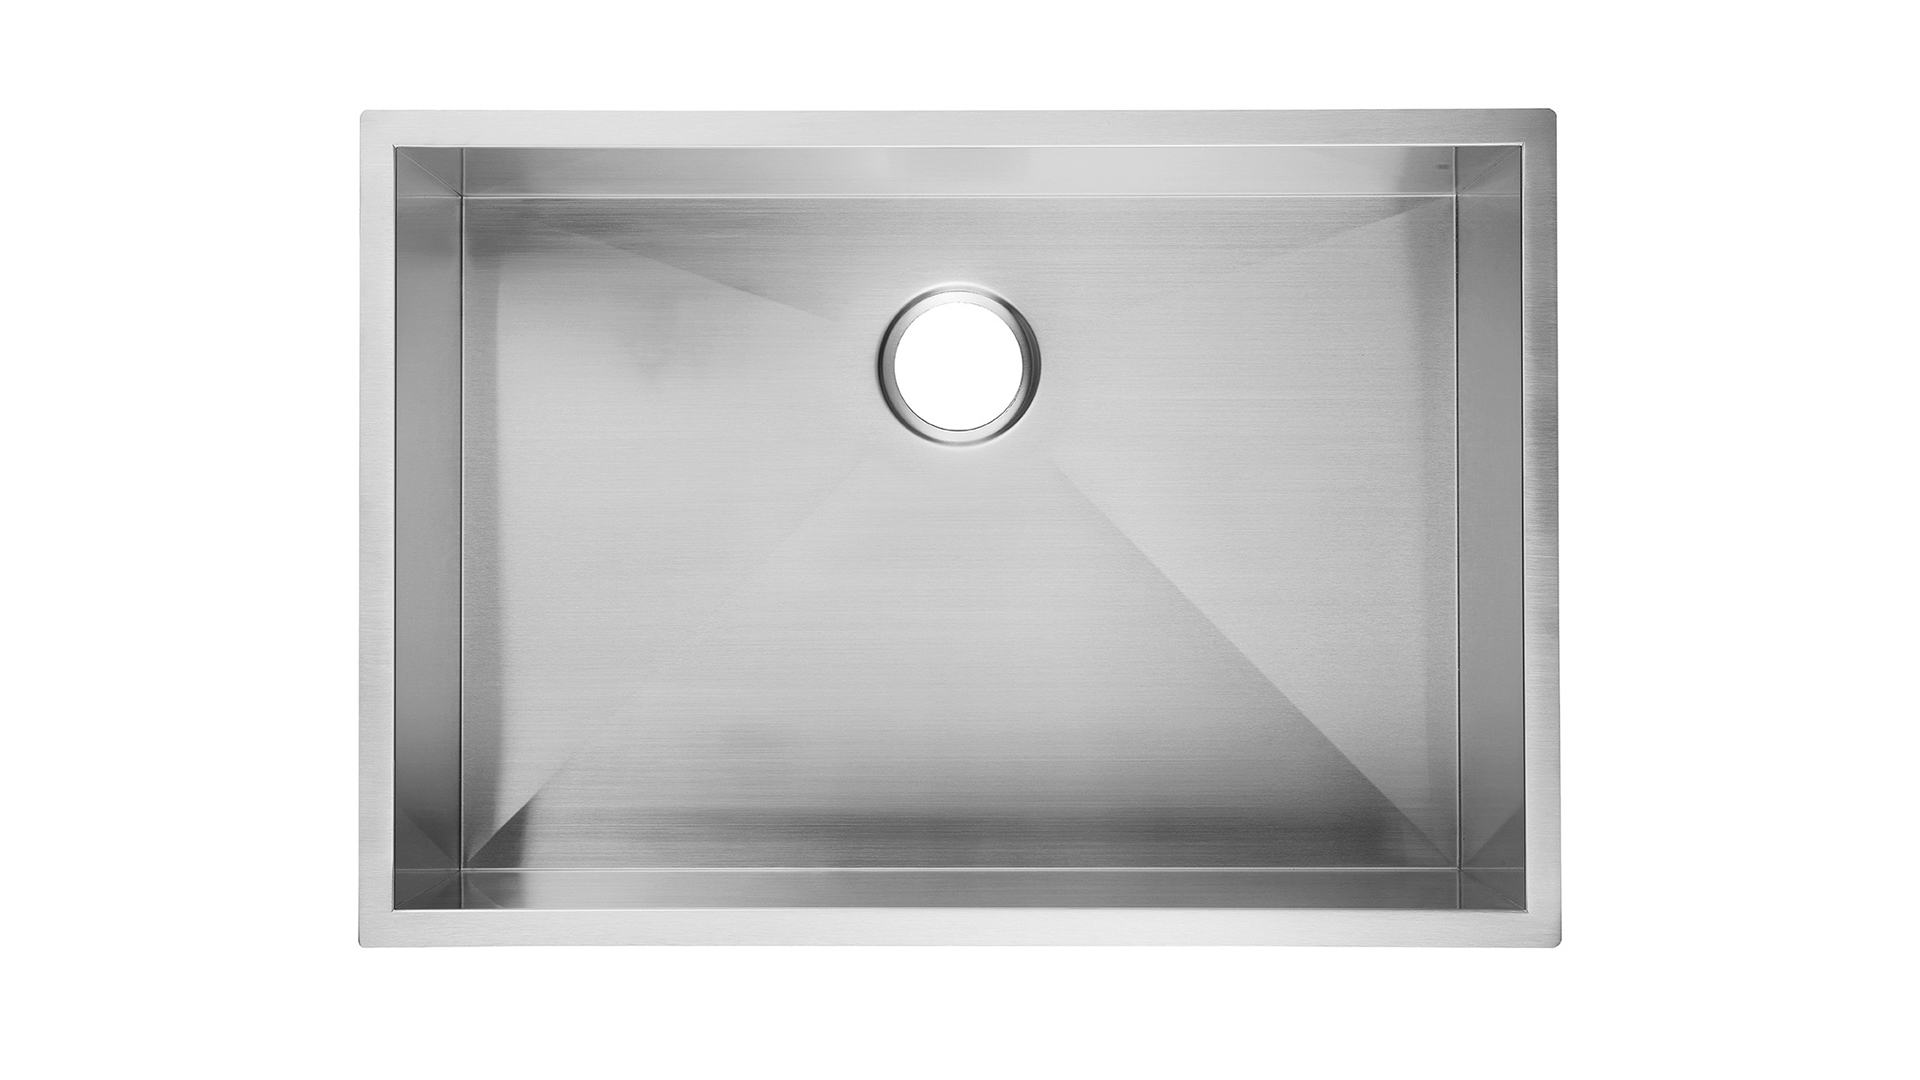 Évier de cuisine sous le comptoir de 23 po en acier inoxydable de 9 po de profondeur, évier de cuisine sous le comptoir Aquacubic